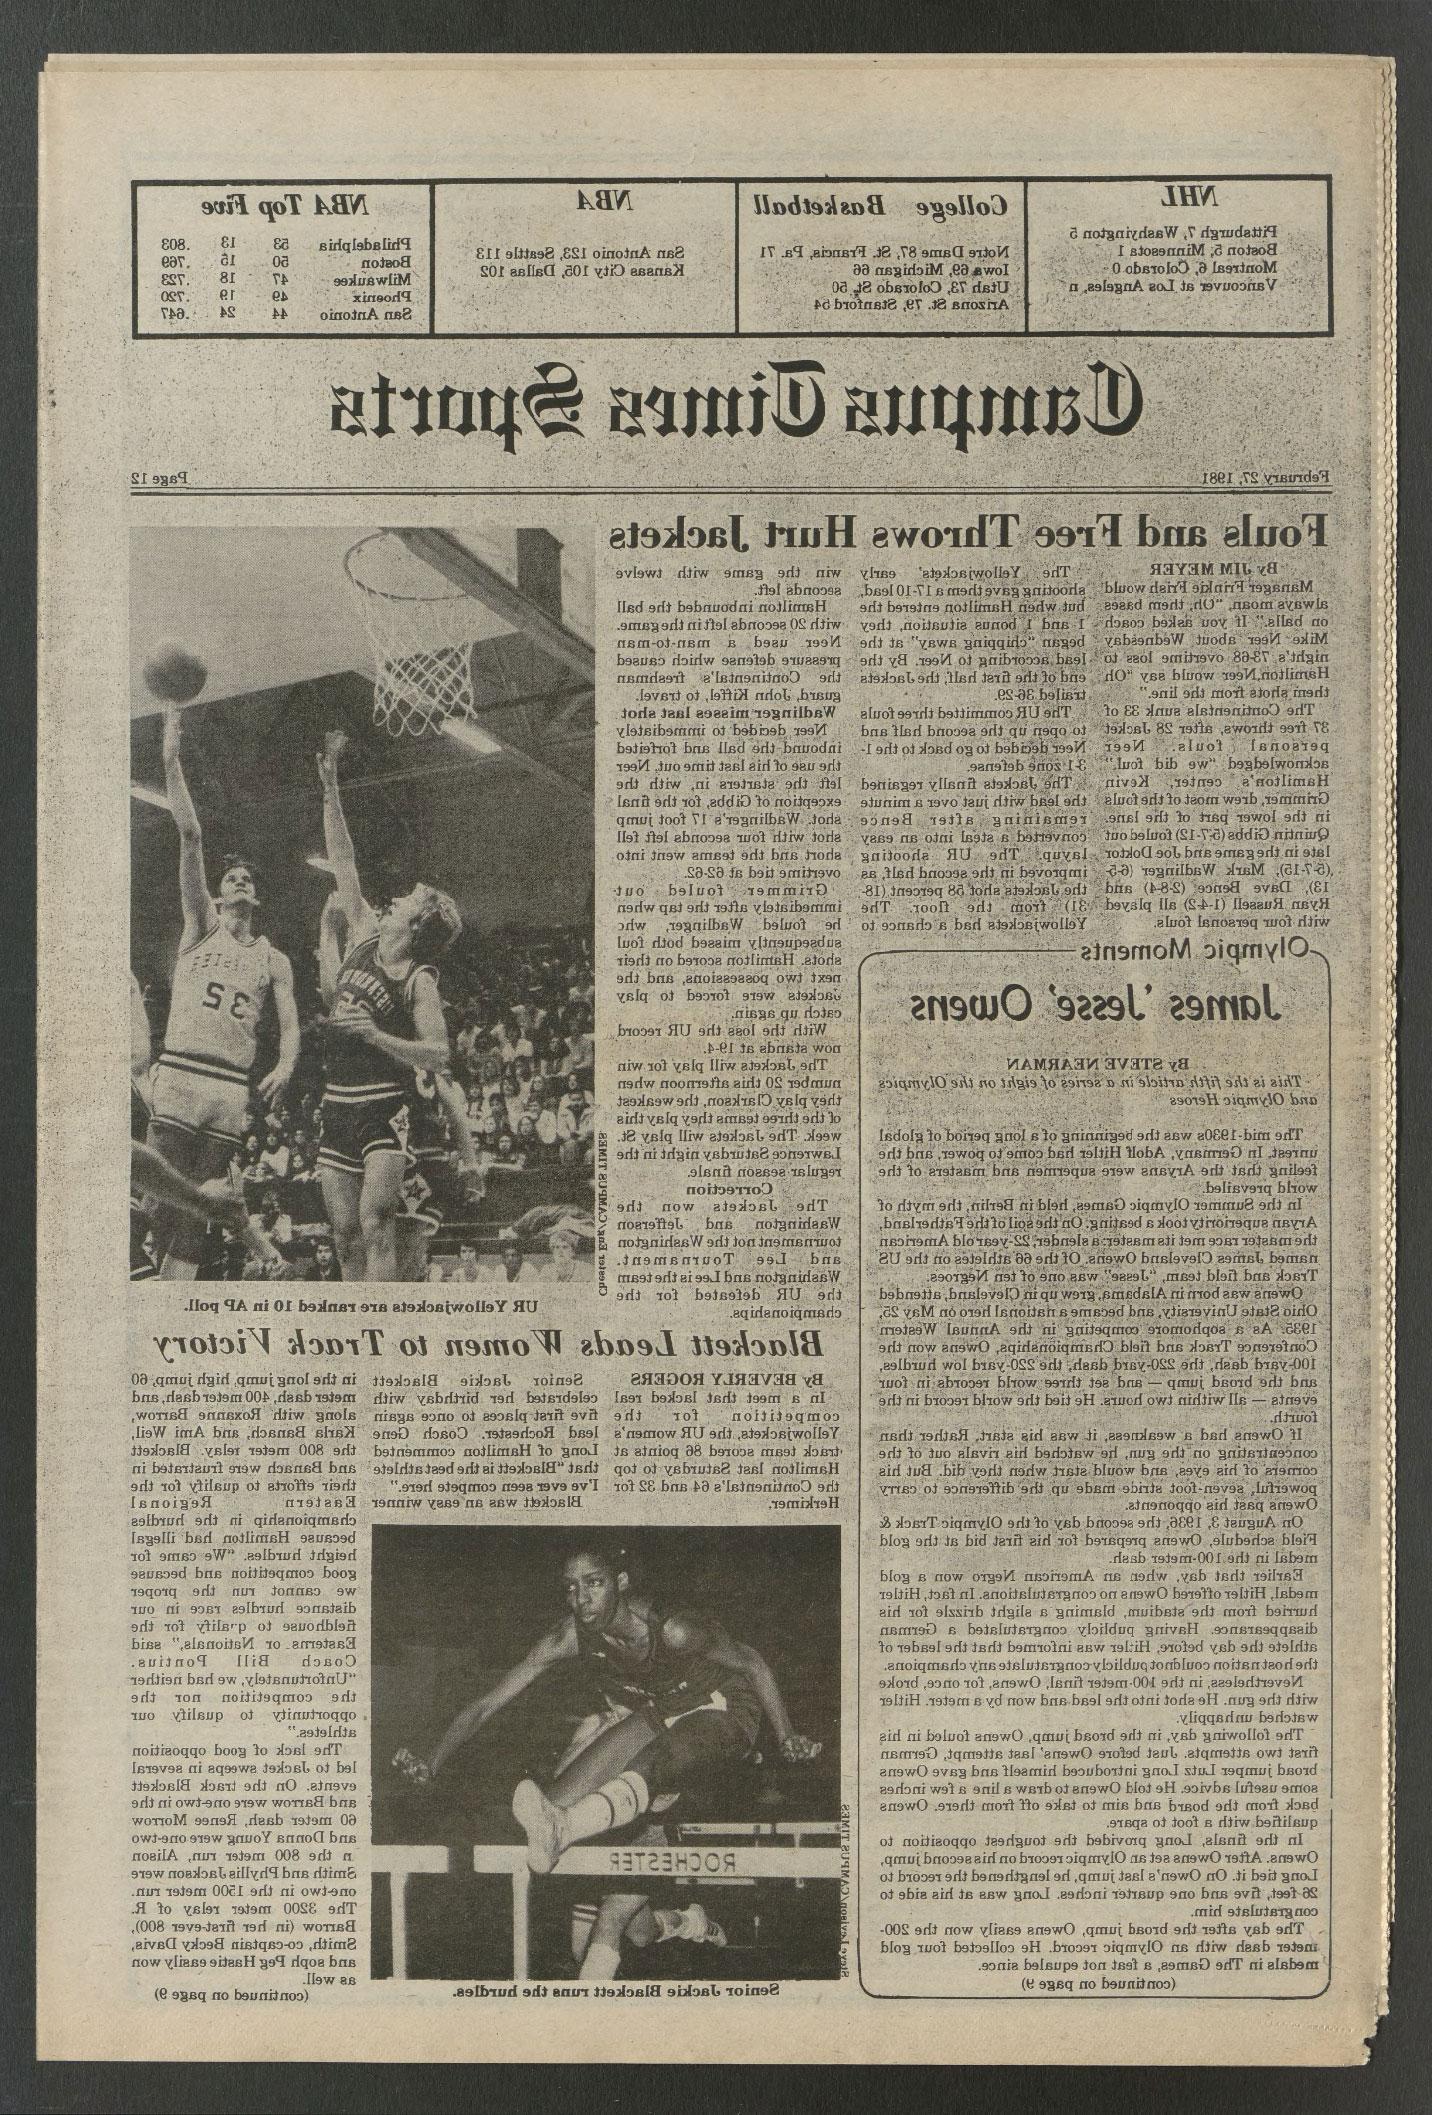 1981年2月27日，《校园时报》刊登了一篇关于杰基·布莱克特的文章.